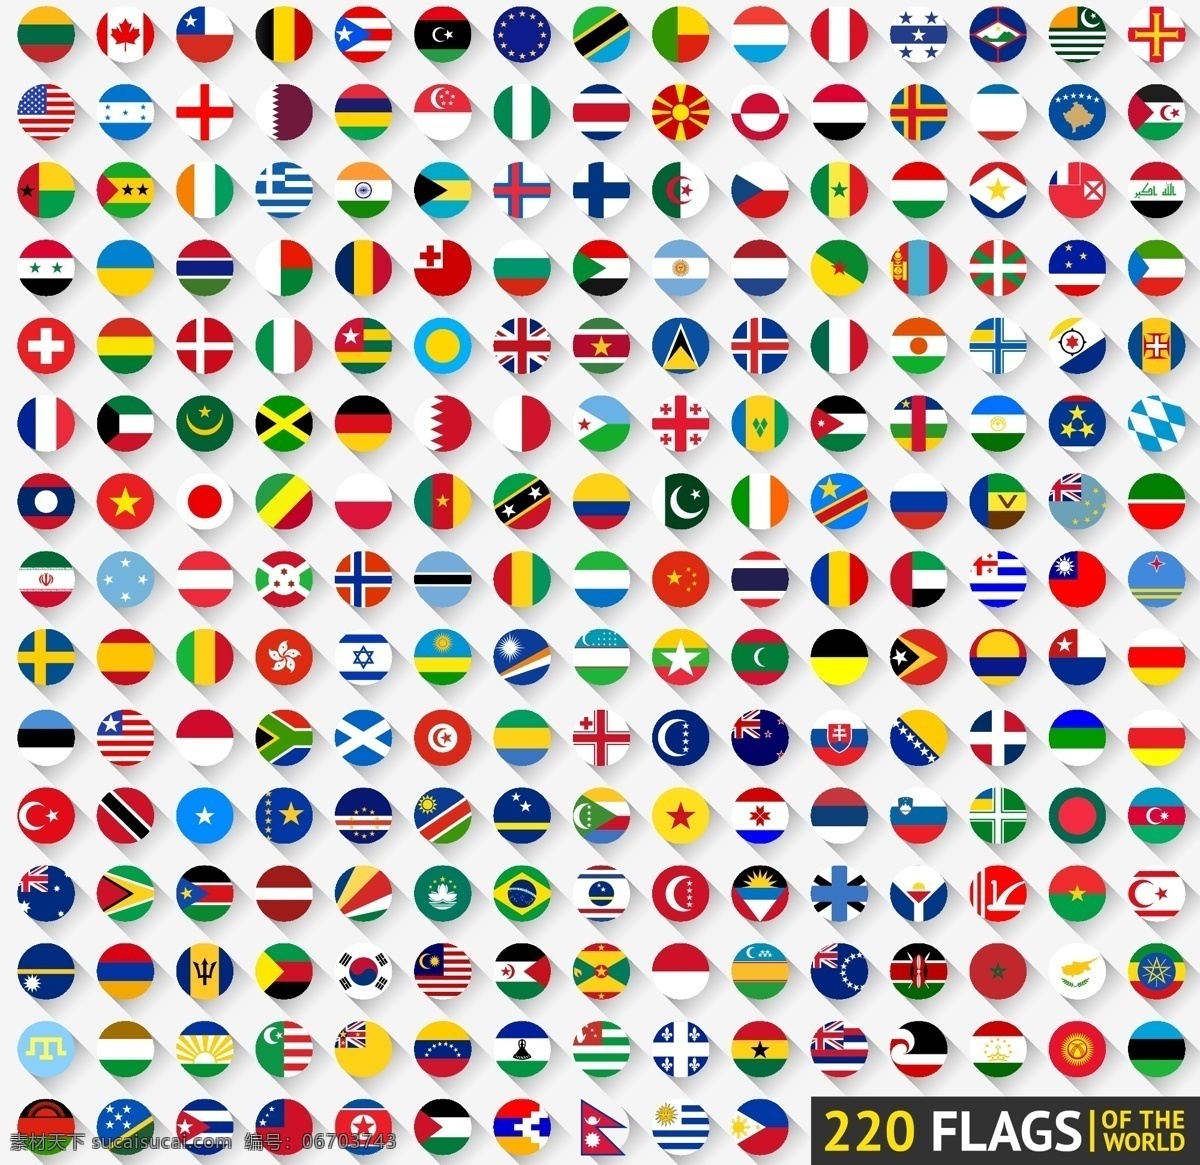 国家 国旗 图标 矢量 中国 蒙古 朝鲜 韩国 日本 菲律宾 越南 老挝 柬埔寨 缅甸 泰国 马来西亚 文莱 新加坡 印度尼西亚 东帝汶 尼泊尔 不丹 孟加拉国 印度 巴基斯坦 斯里兰卡 马尔代夫 哈萨克斯坦 吉尔吉斯斯坦 塔吉克斯坦 乌兹别克斯坦 土库曼斯坦 阿富汗 伊拉克 伊朗 叙利亚 约旦 黎巴嫩 以色列 图标按钮